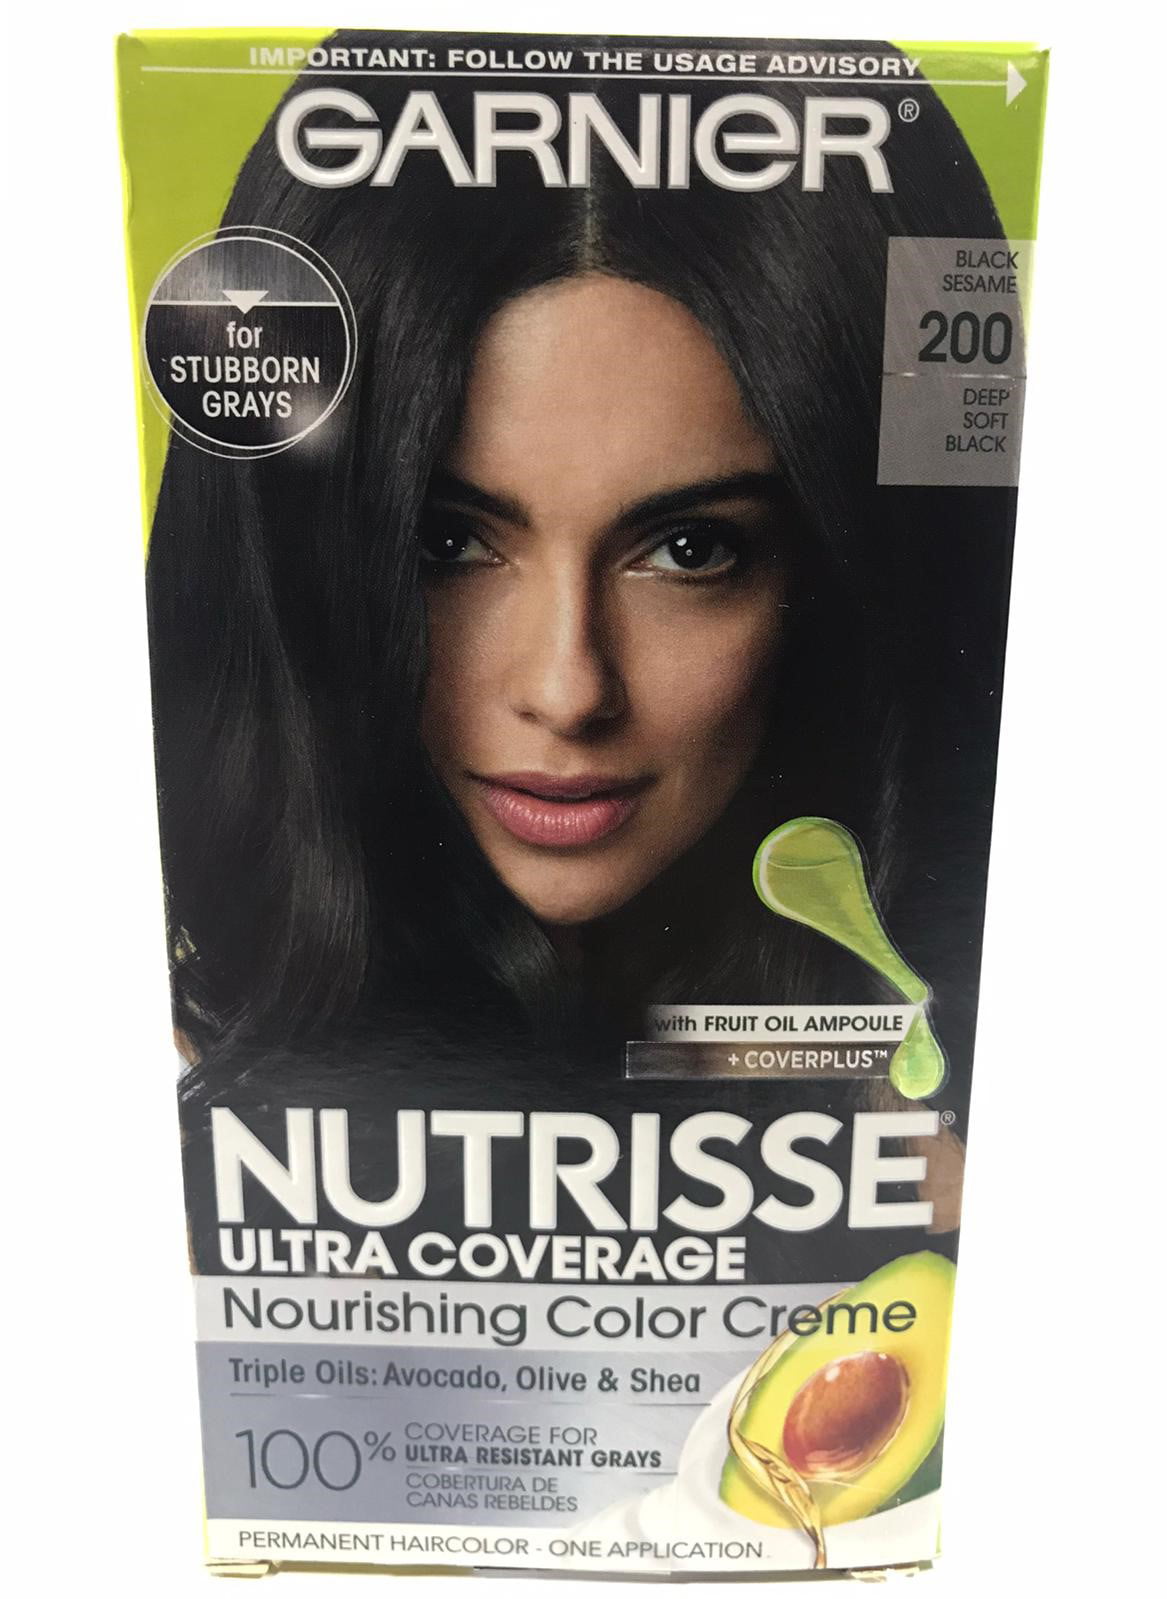 Garnier Nutrisse Nourishing Hair Color Creme, Deep Soft Black (Black  Sesame) 200 